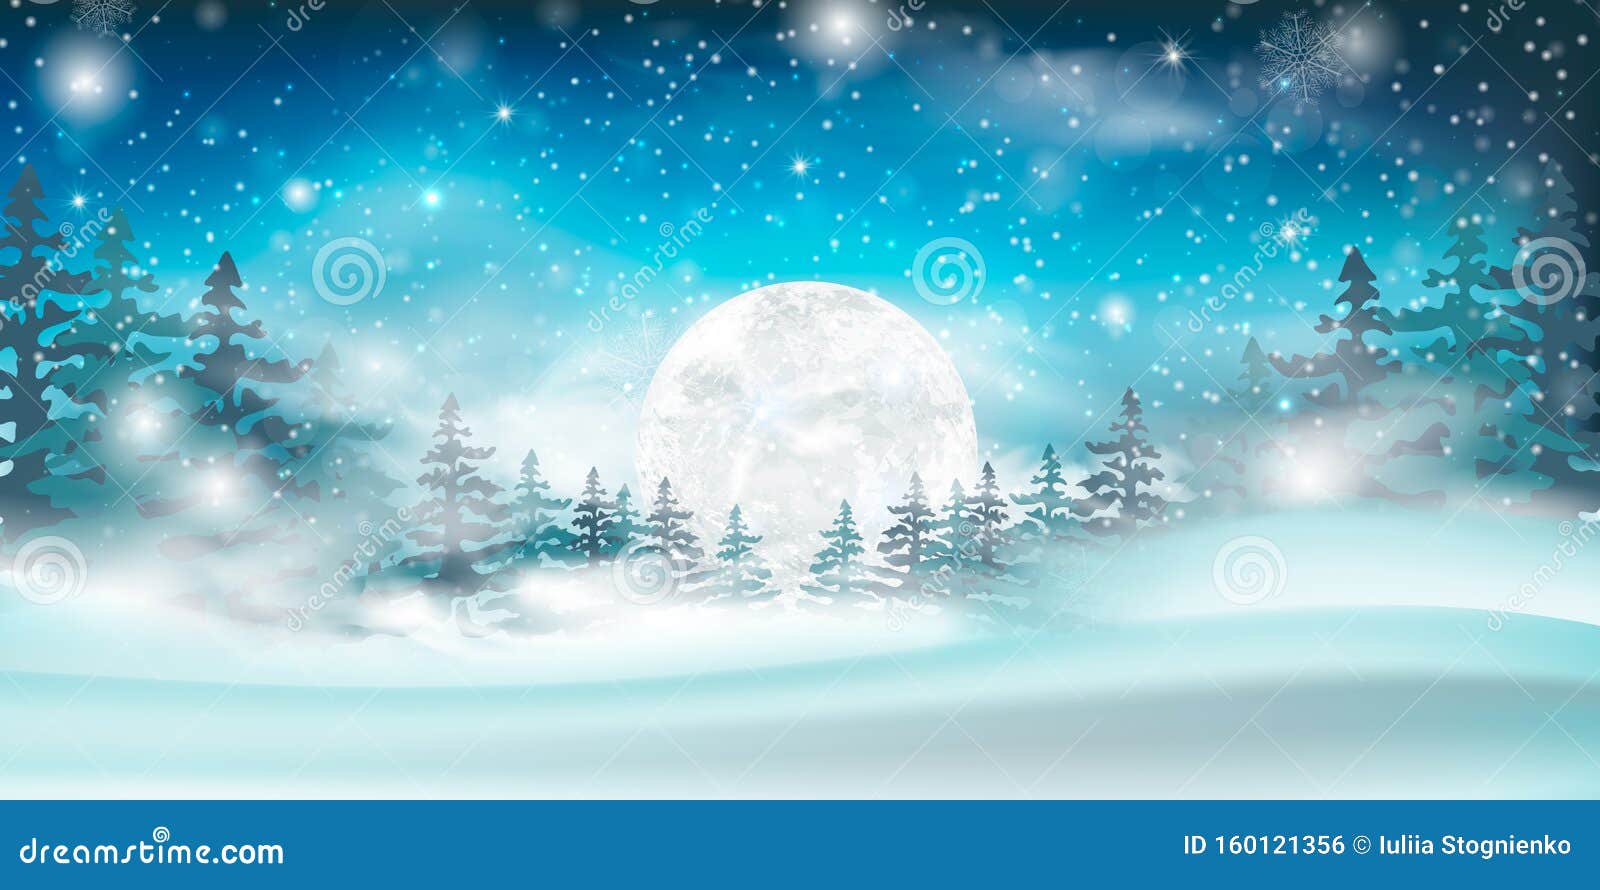 Hình nền Giáng Sinh với tuyết rơi trên bầu trời: Tuyết rơi lạnh giá về đêm, khiến cho khung cảnh Giáng Sinh trở nên đặc biệt hơn bao giờ hết. Hình nền Giáng Sinh với tuyết rơi trên bầu trời sẽ mang đến cho bạn cảm giác đang ở trong một không gian ảo diệu, vui tươi và ấm áp vào mùa Giáng Sinh. Khám phá và tận hưởng sự đẹp nhất của mùa Giáng Sinh với hình nền tuyệt đẹp này.